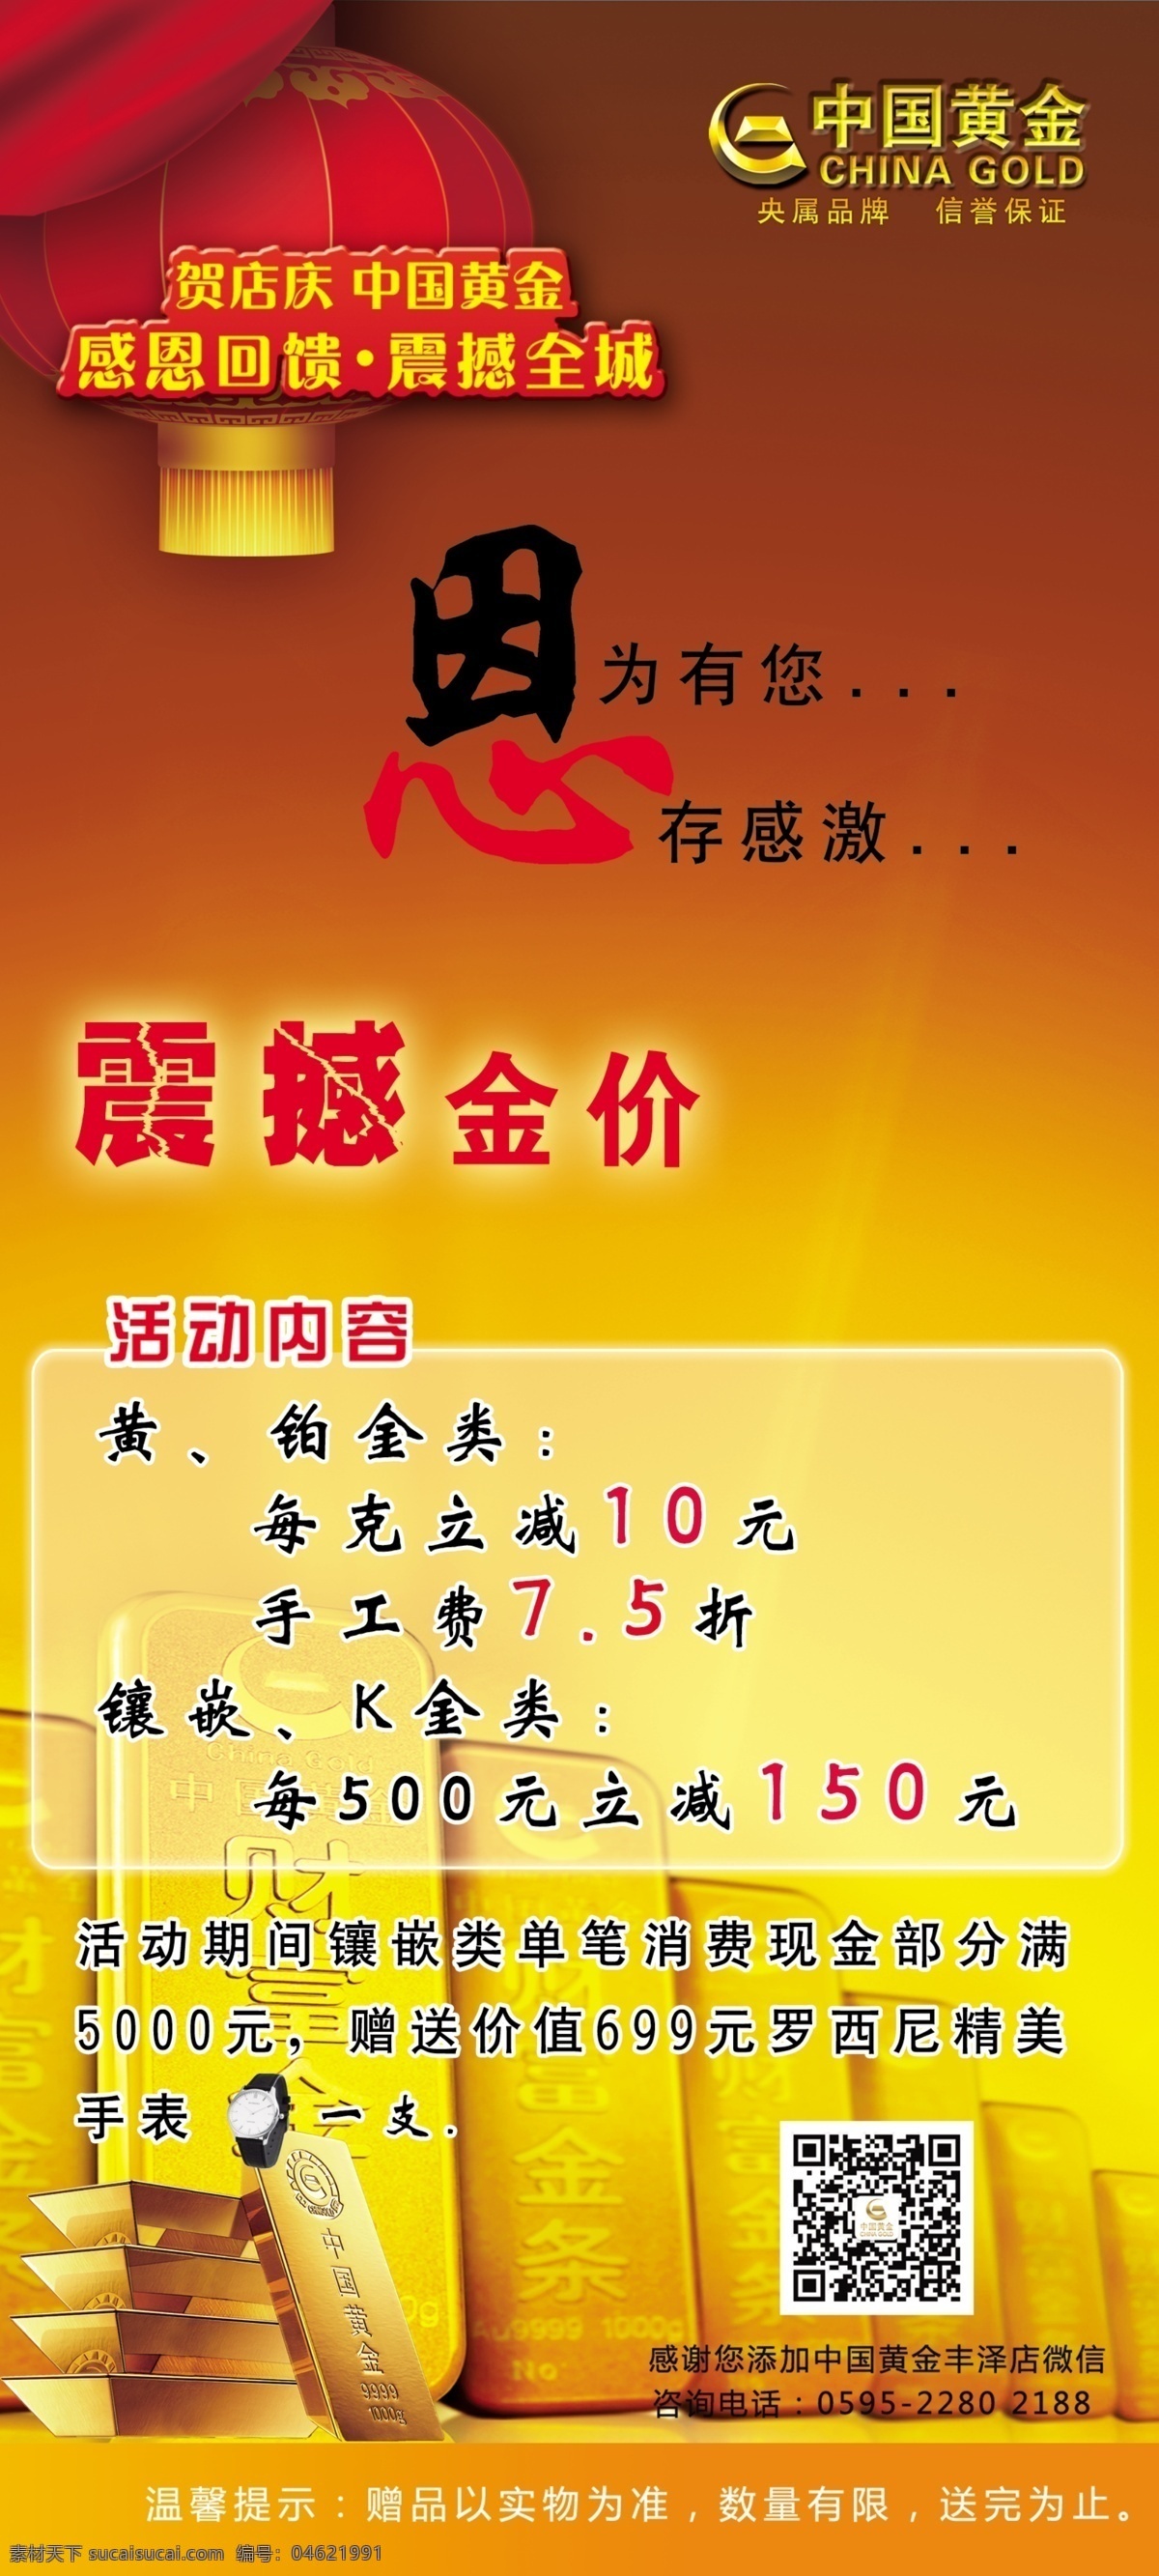 中国黄金 震撼金价 黄金 金条 金块 喜庆氛围 广告设计模板 源文件